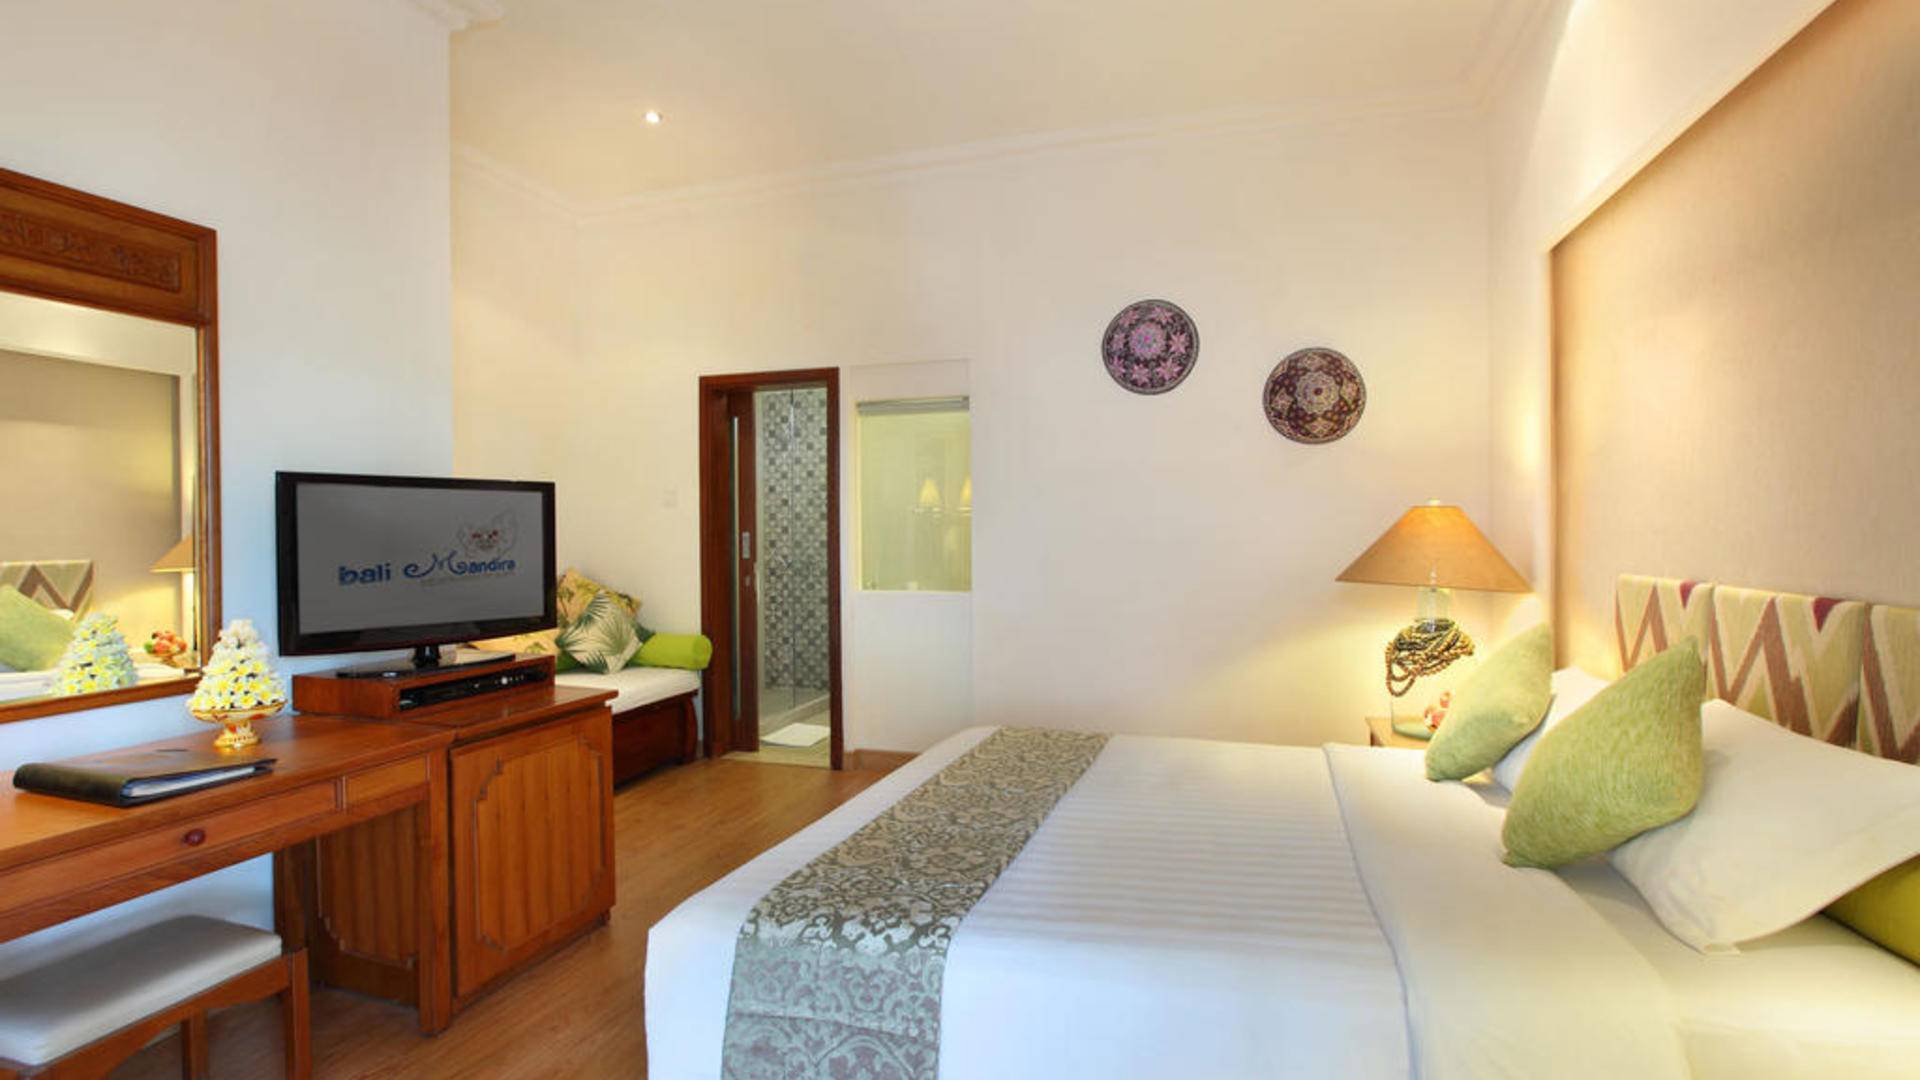 Отель bali mandira beach resort & spa 4**** (легиан / индонезия) - отзывы туристов о гостинице описание номеров с фото